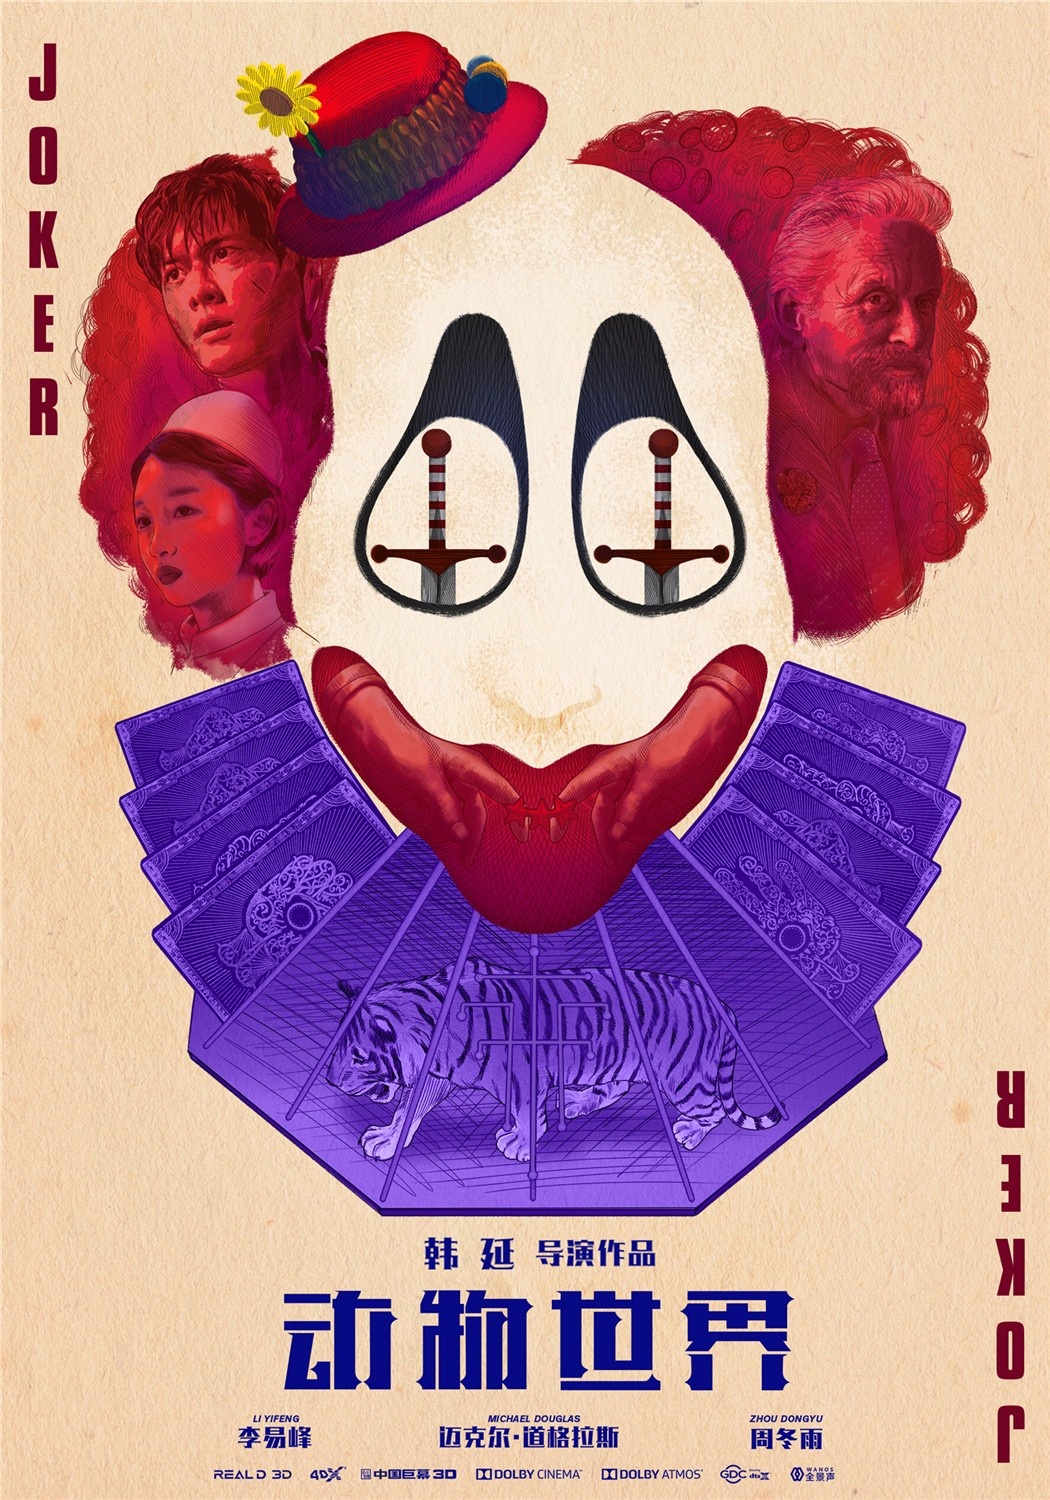 《动物世界》发布“Joker”版海报 处处暗藏玄机